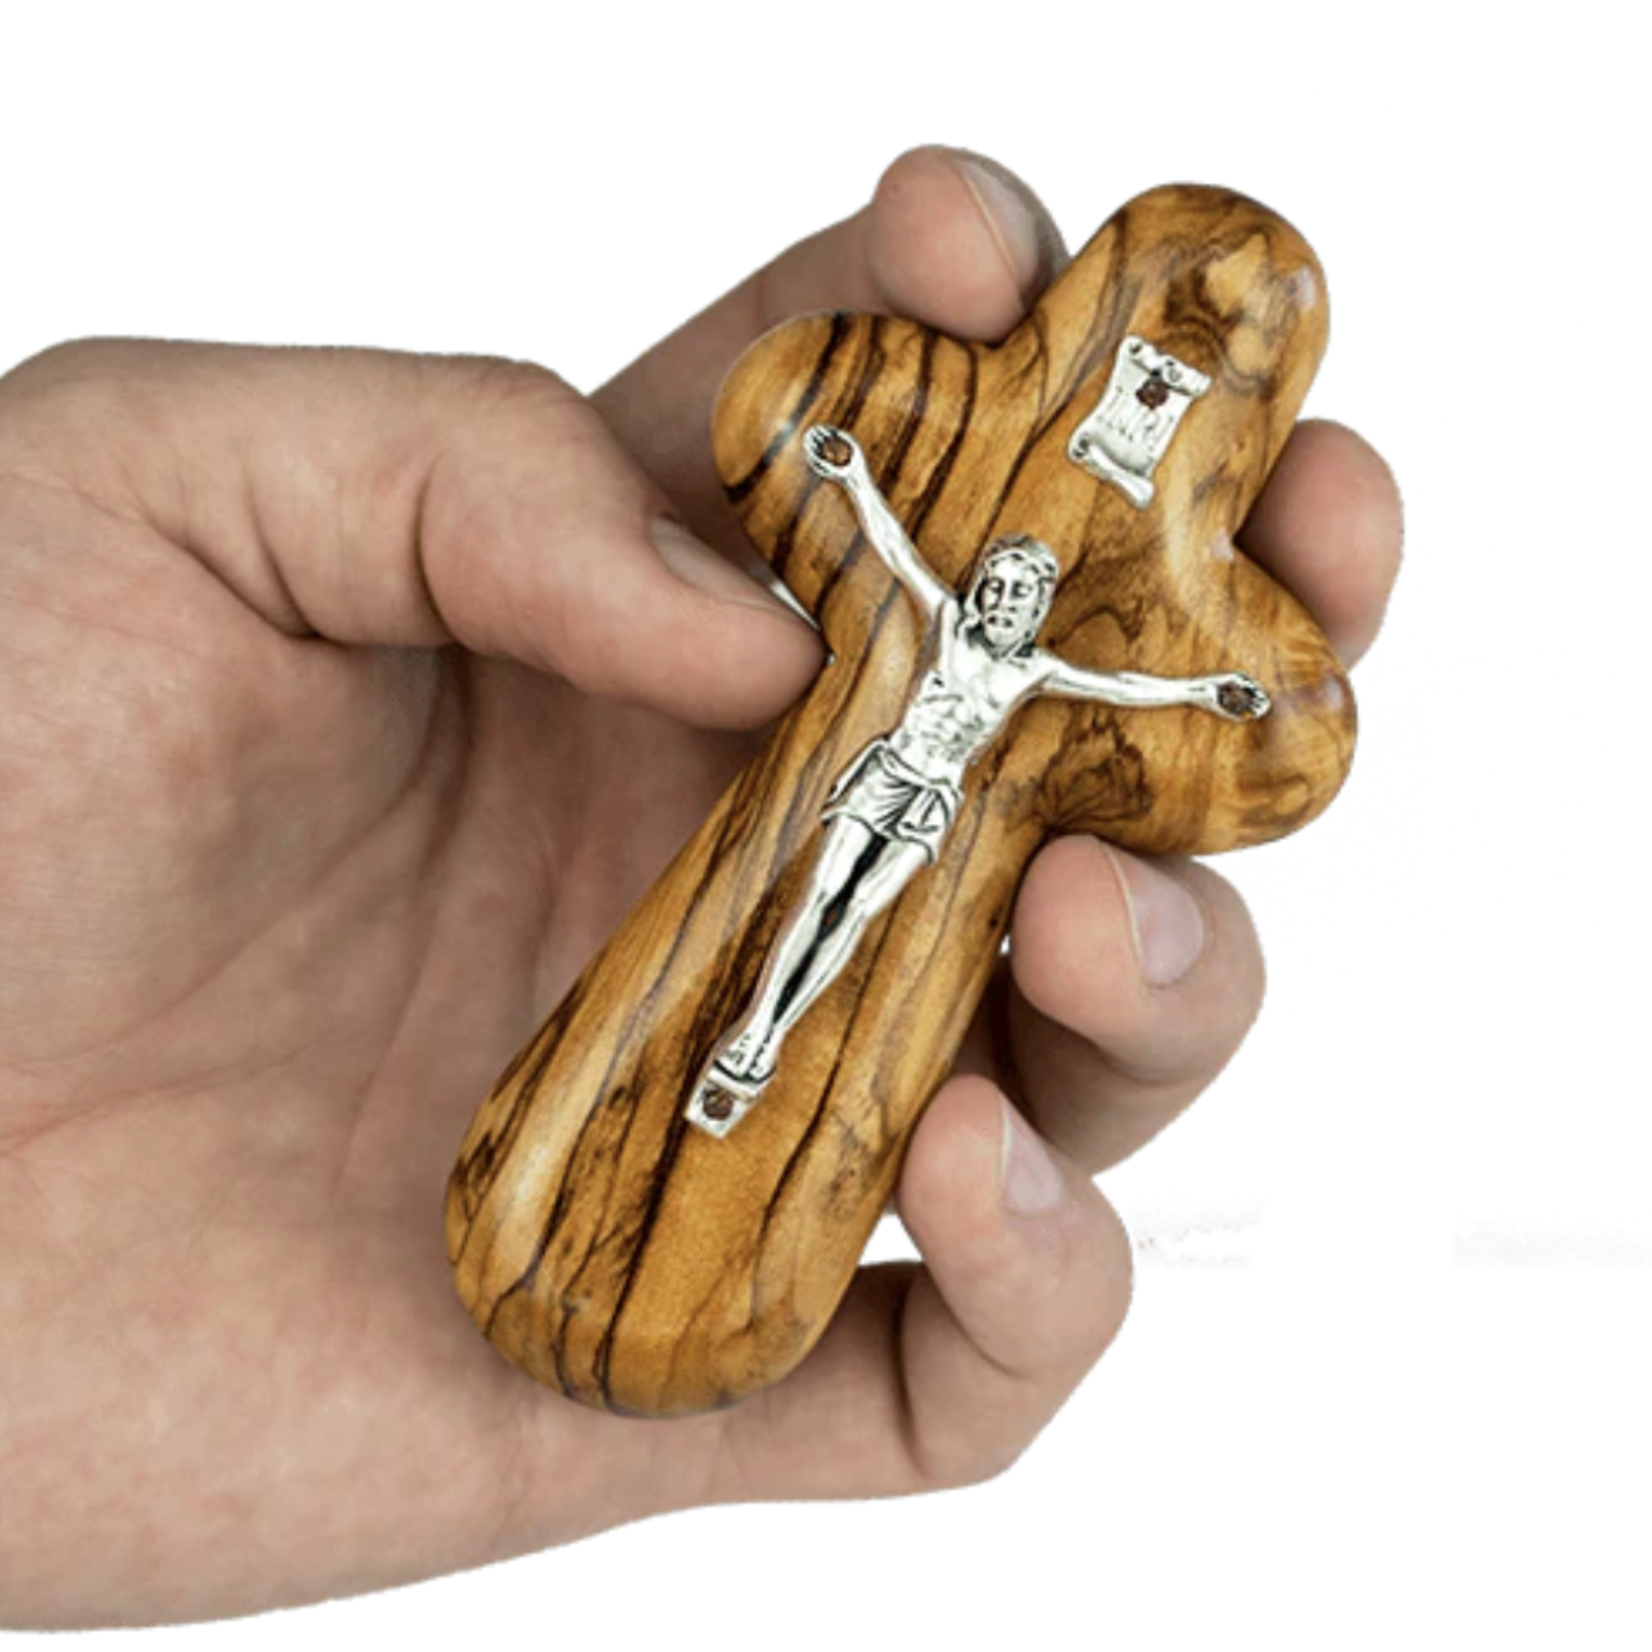 Olive Wood Crucifix Comfort Cross